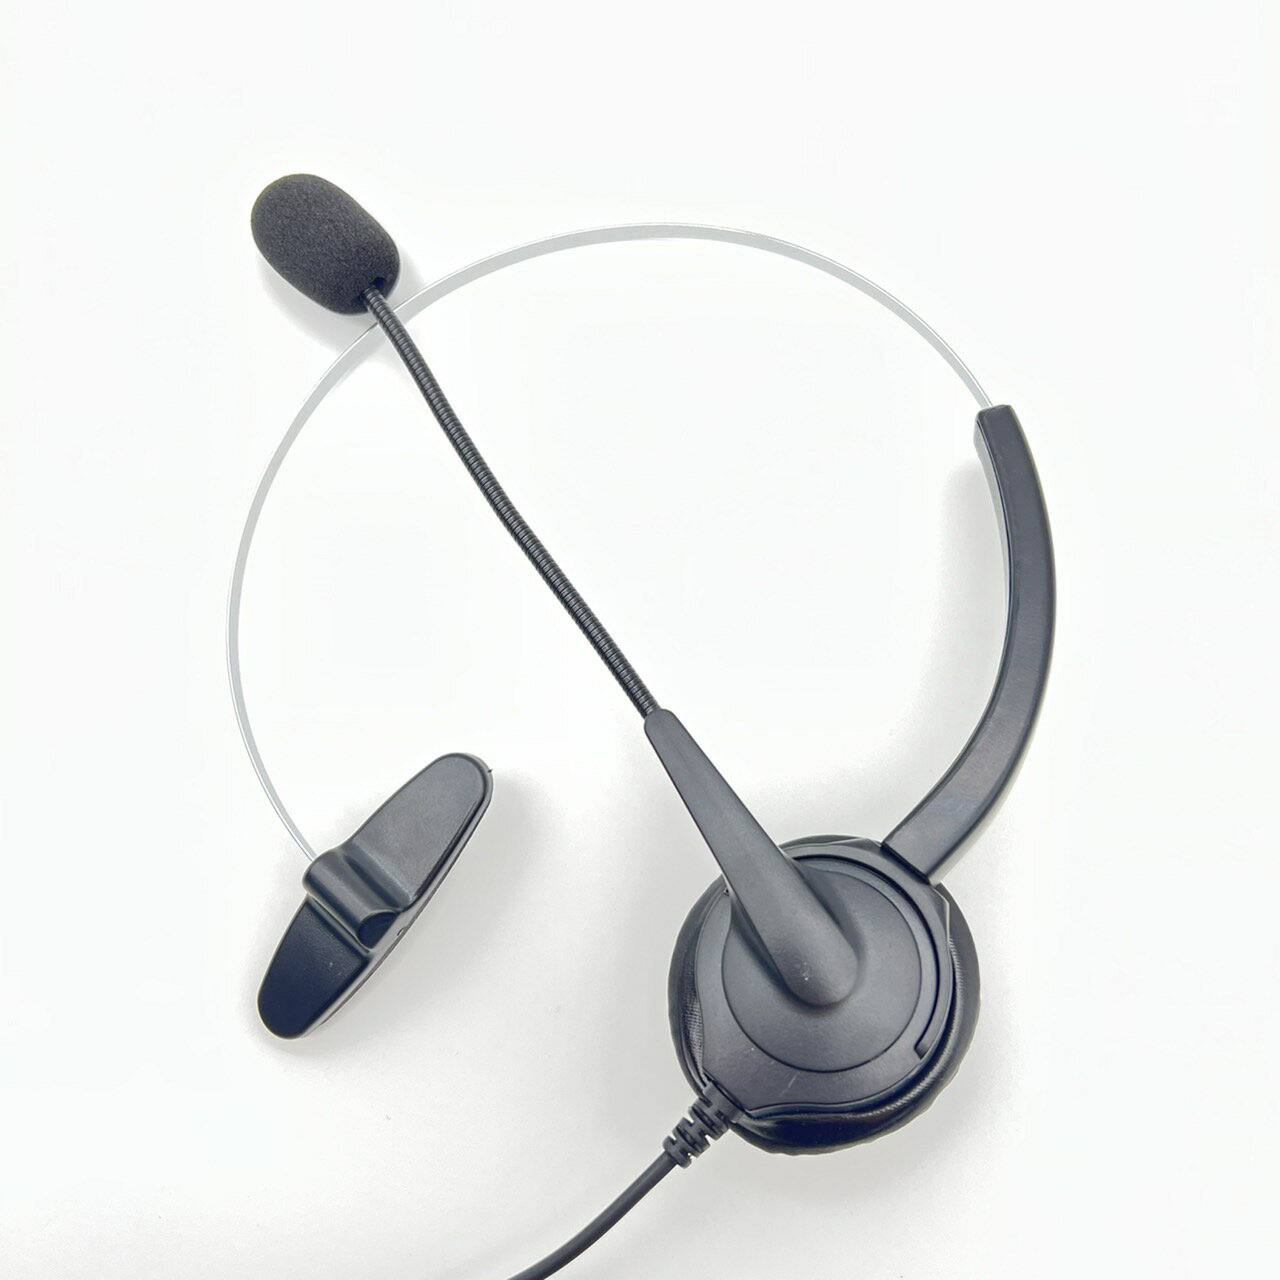 通航 單耳電話耳麥含調音靜音功能 TA-9012DA 單耳電話耳機 office headset phone